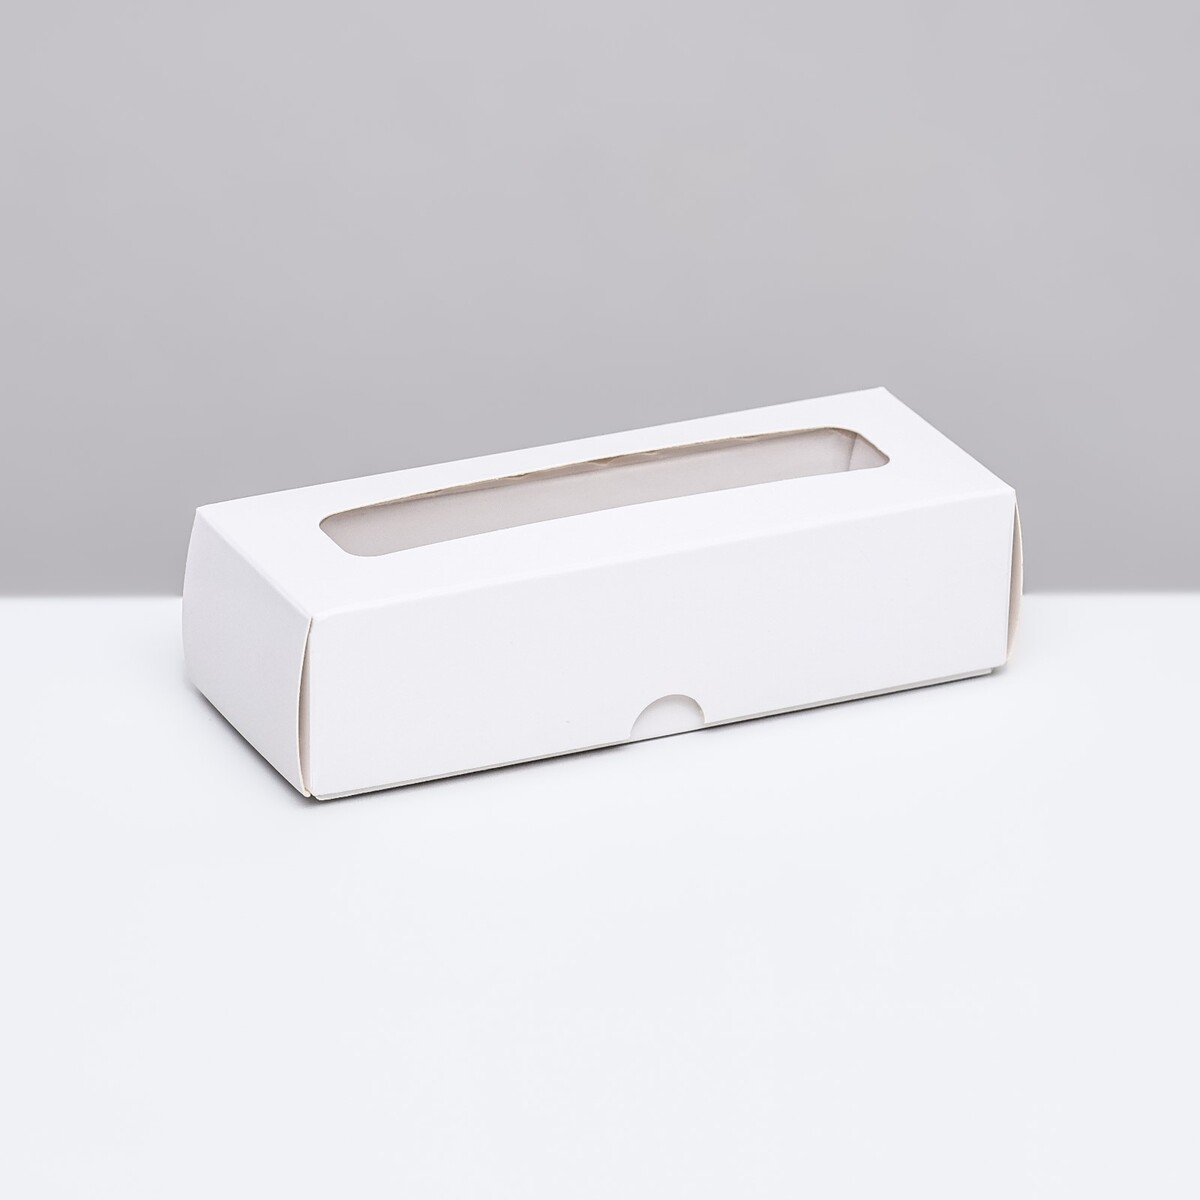 Упаковка с обечайкой для 3 конфет, с окном, белый 13x5x3,3 см коробка с обечайкой с окном